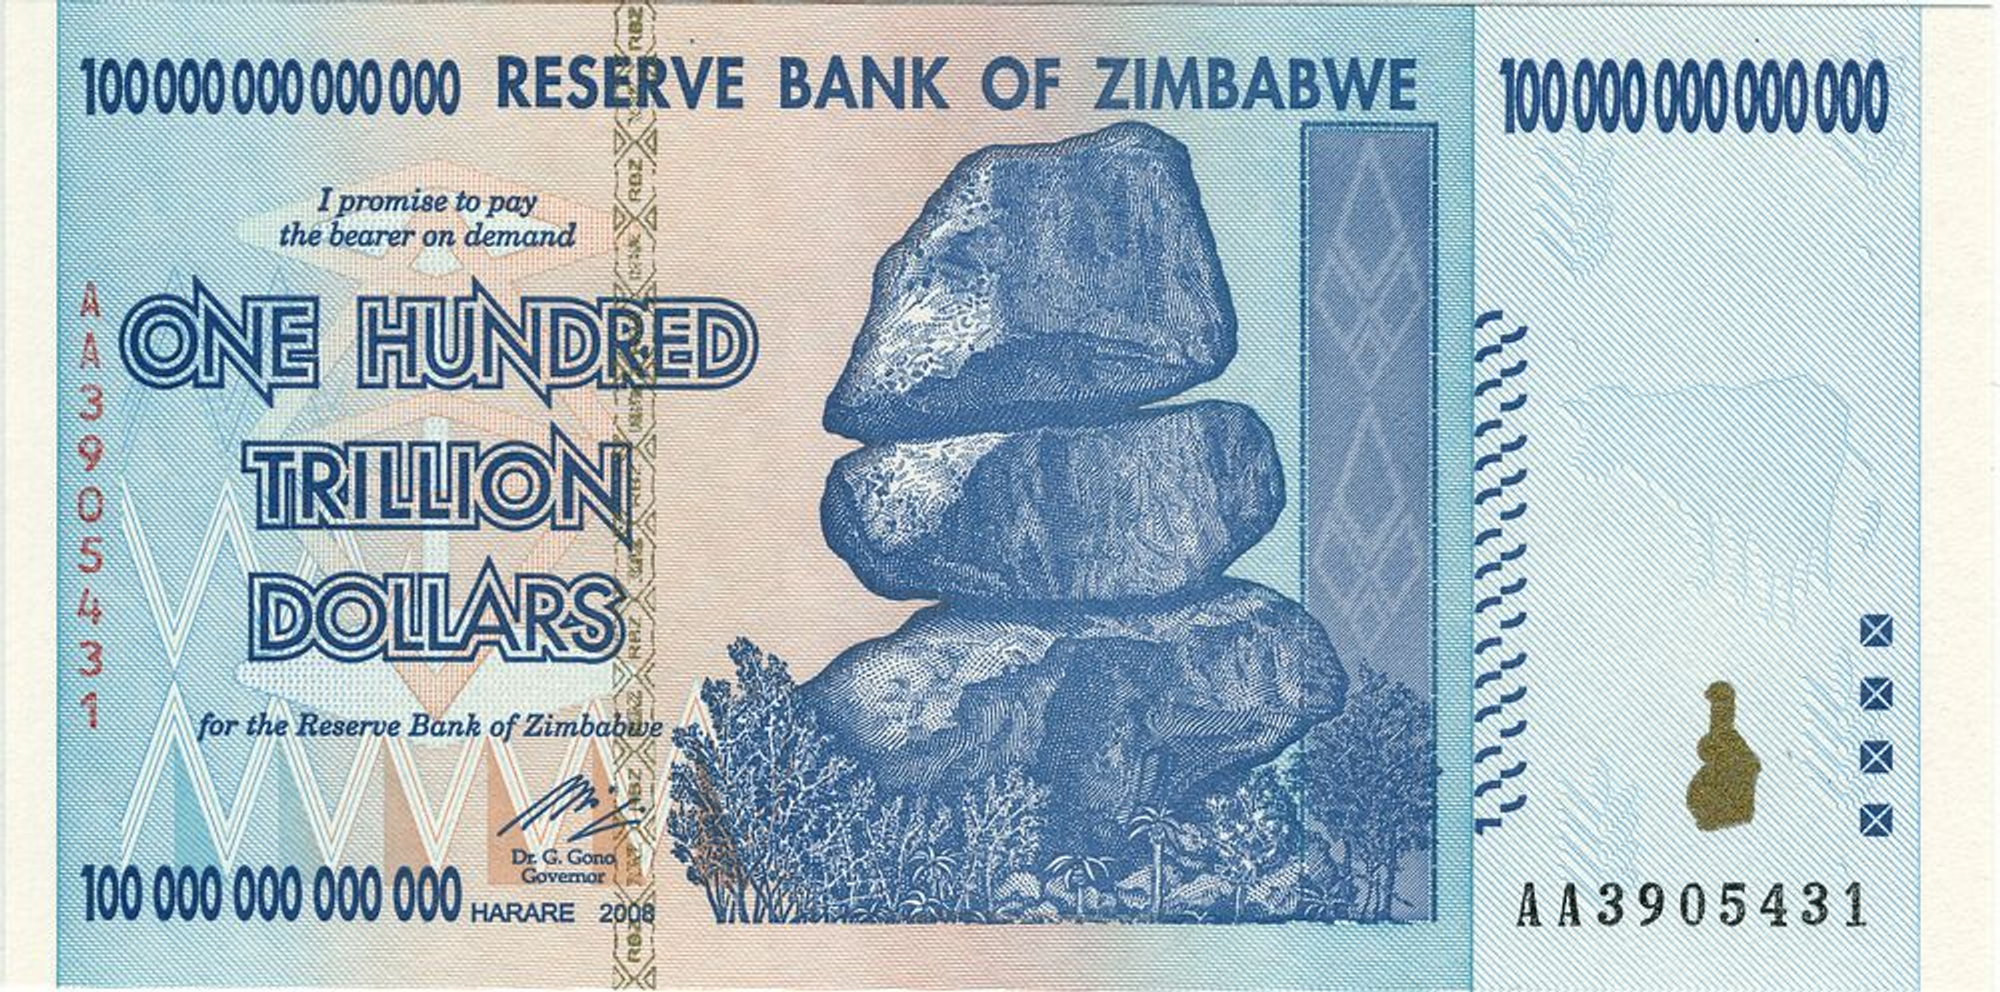 짐바브웨의 초 하이퍼 인플레이션으로 발행 되었던 100조 짐브바브웨달러  
(3달러면 교환 가능했다고 한다.)